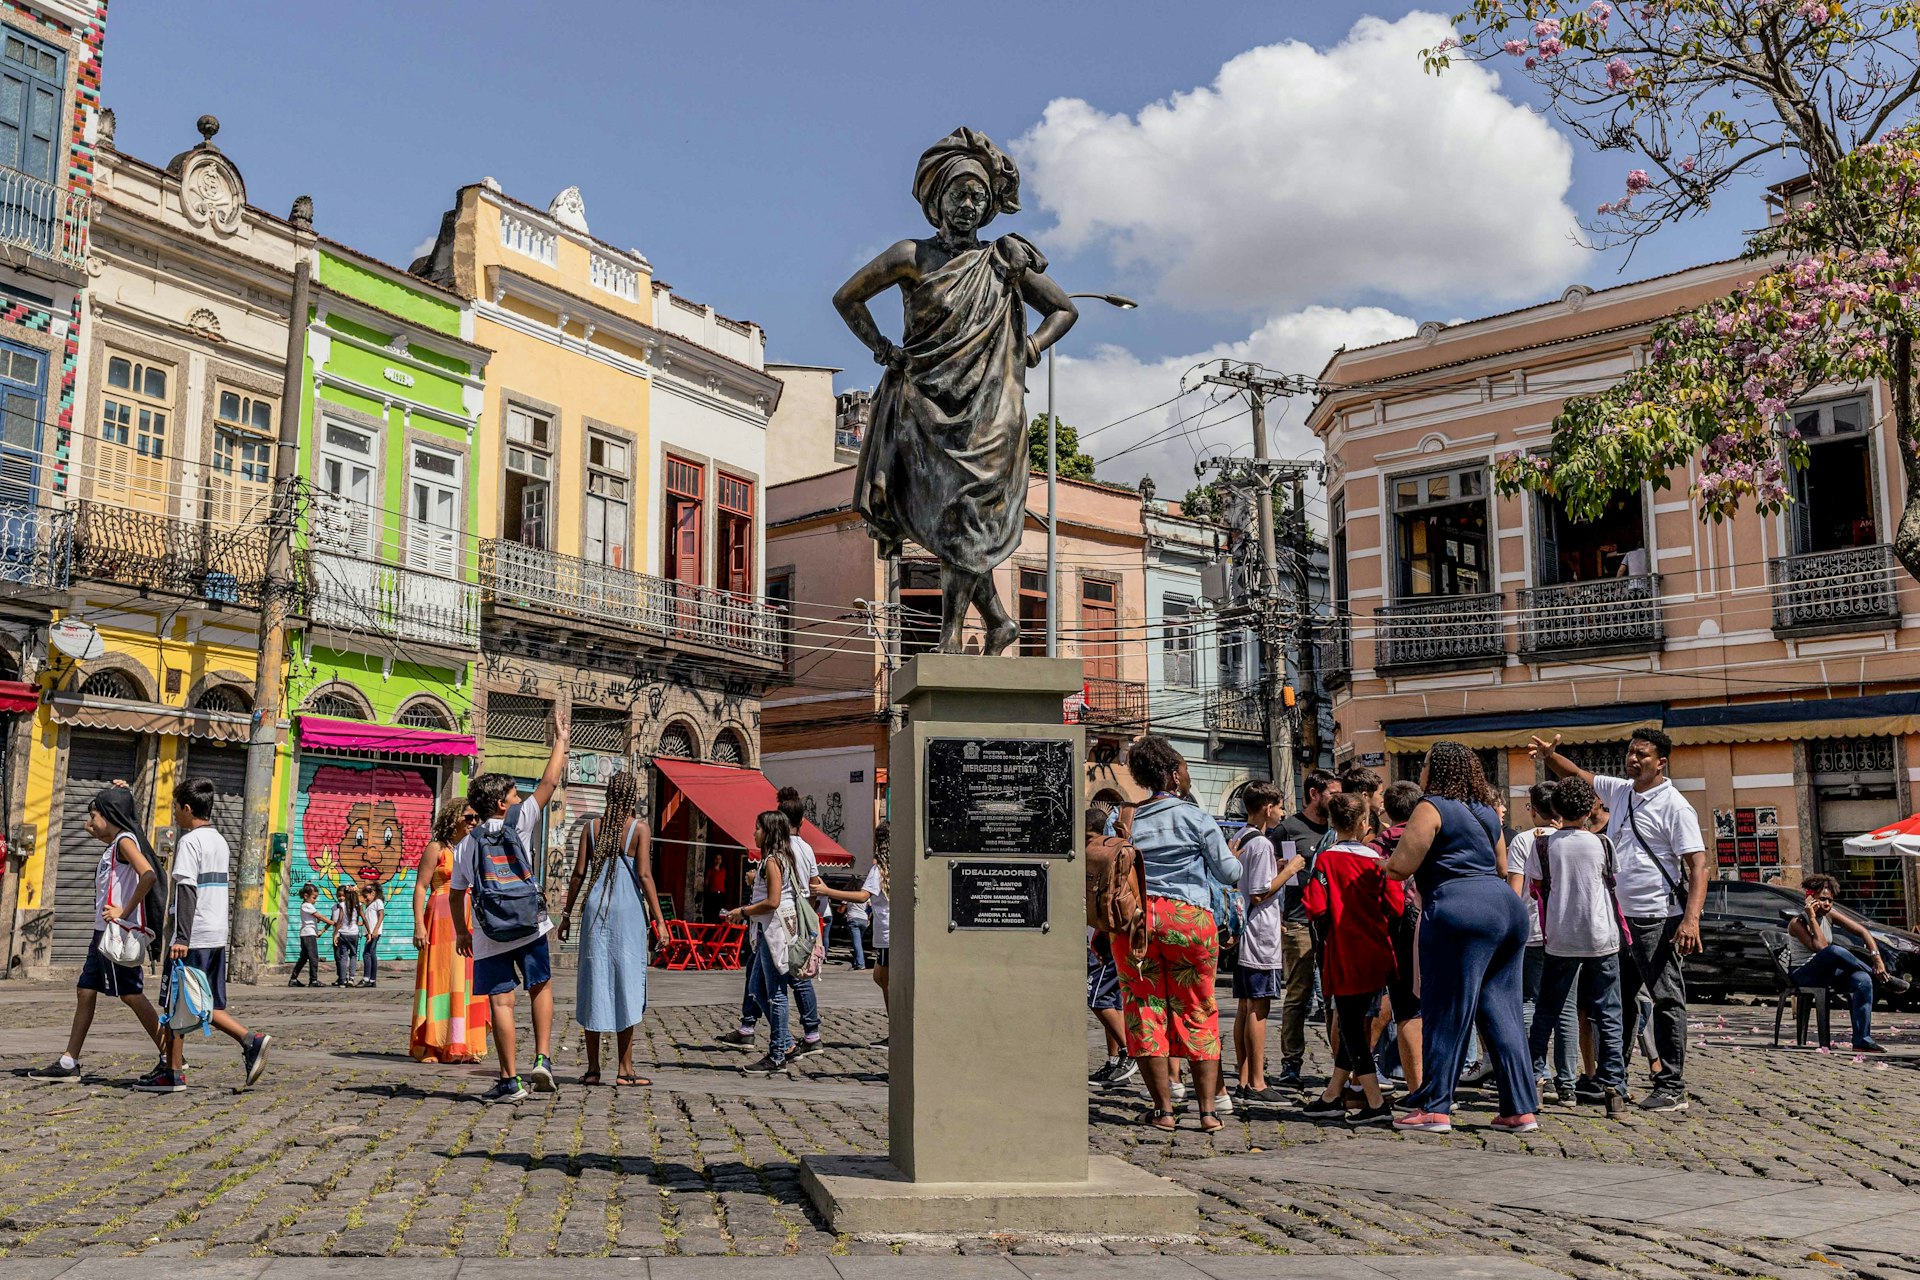 Statue of Mercedes Batista, the first black female dancer to dance in Rio’s Municipal Theater, in Francisco da Prainha square